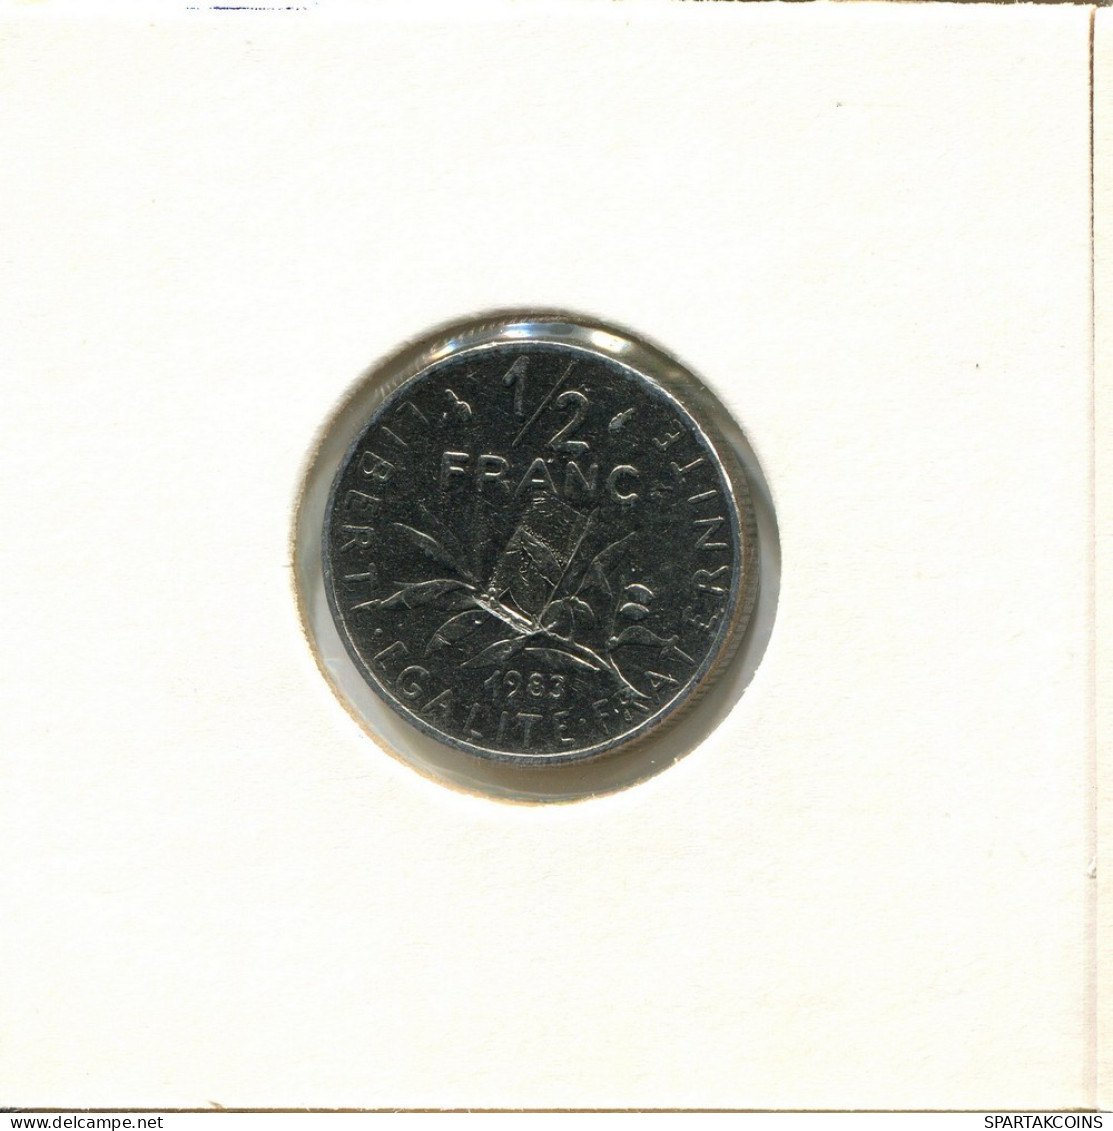 1/2 FRANC 1983 FRANCIA FRANCE Moneda #BB530.E.A - 1/2 Franc